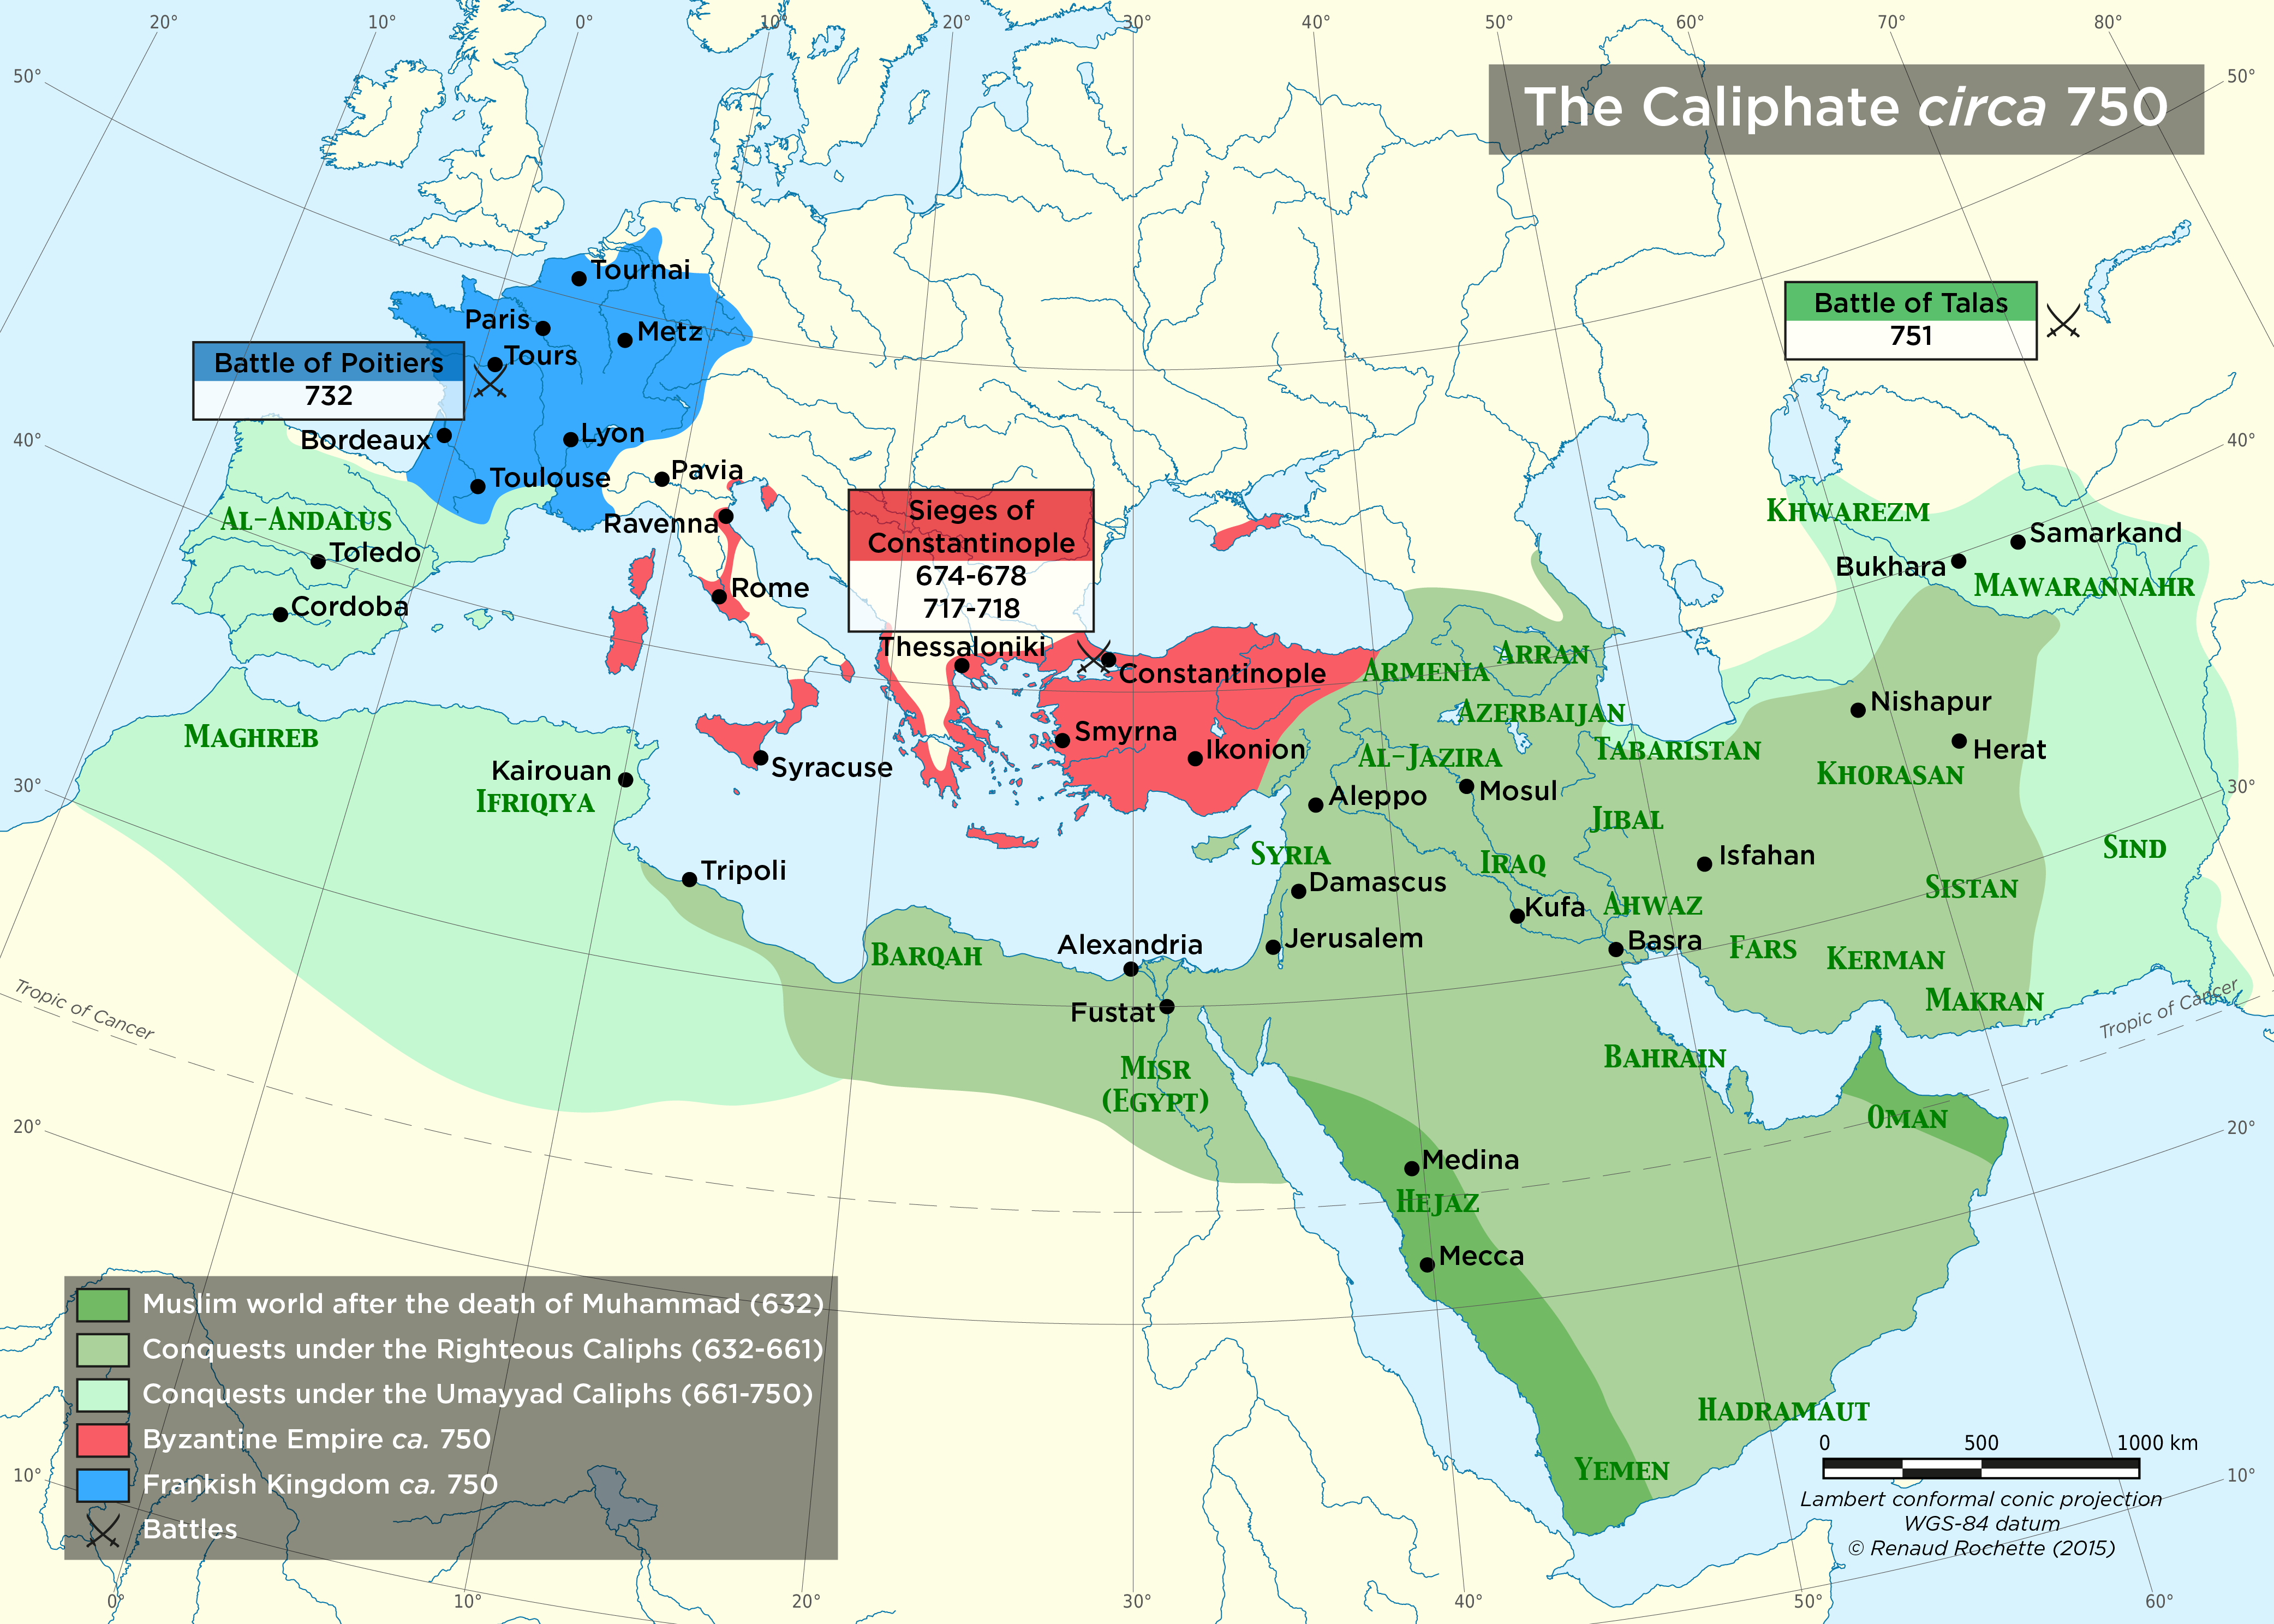 Мусульманская империя